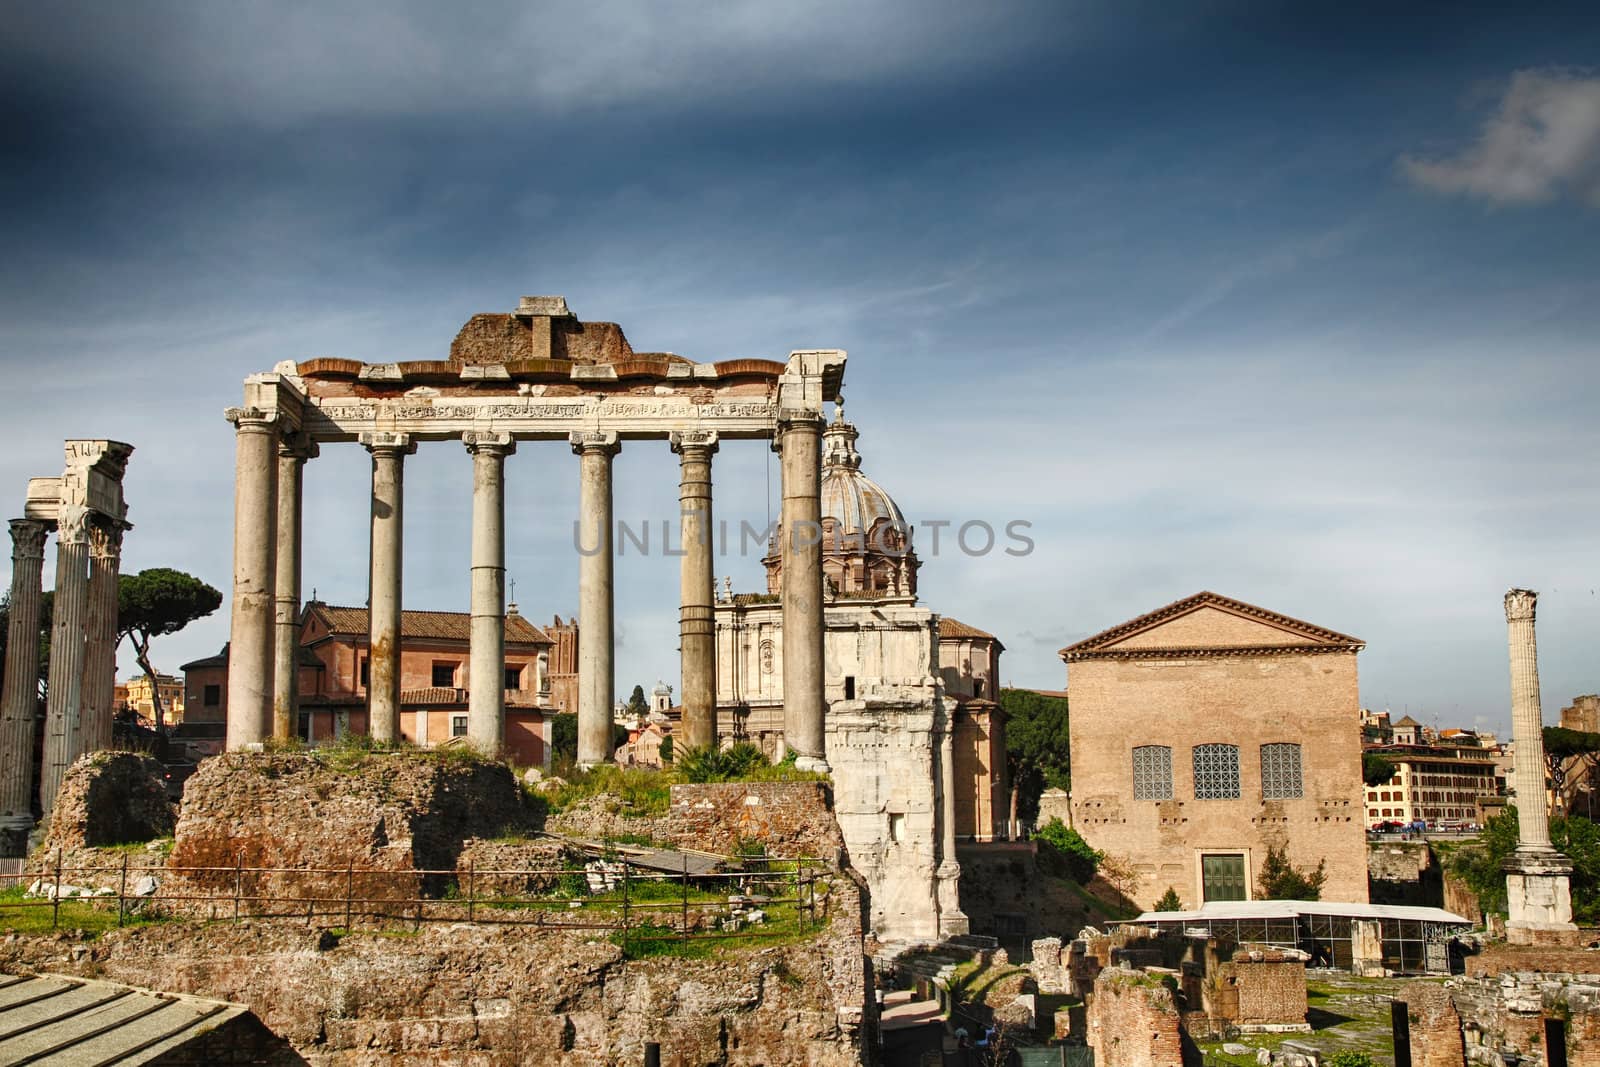 Foro romano,Roman Forum in Rome